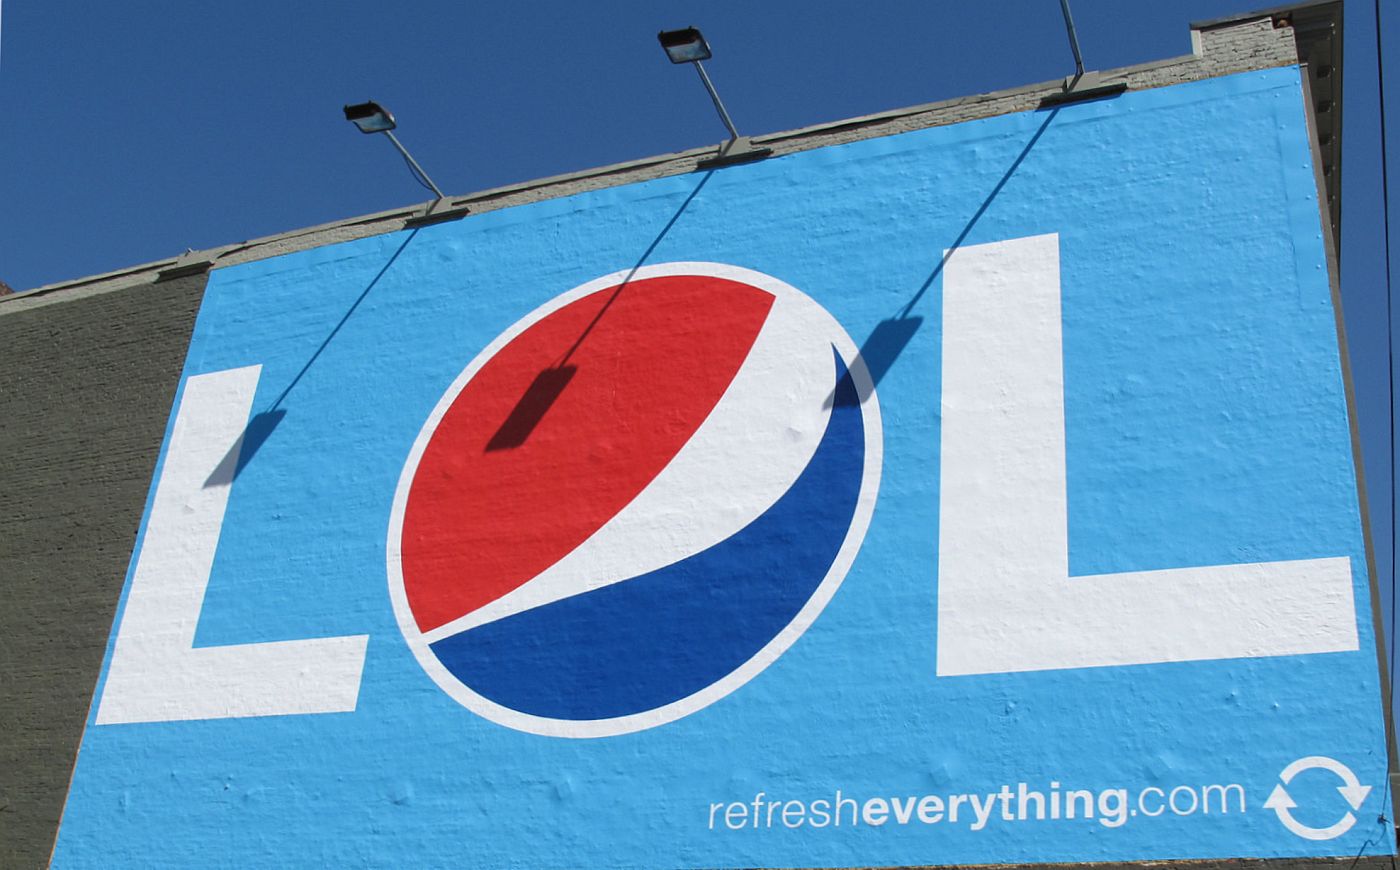 foto billboardu Pepsi s využitím internetovej skratky LOL